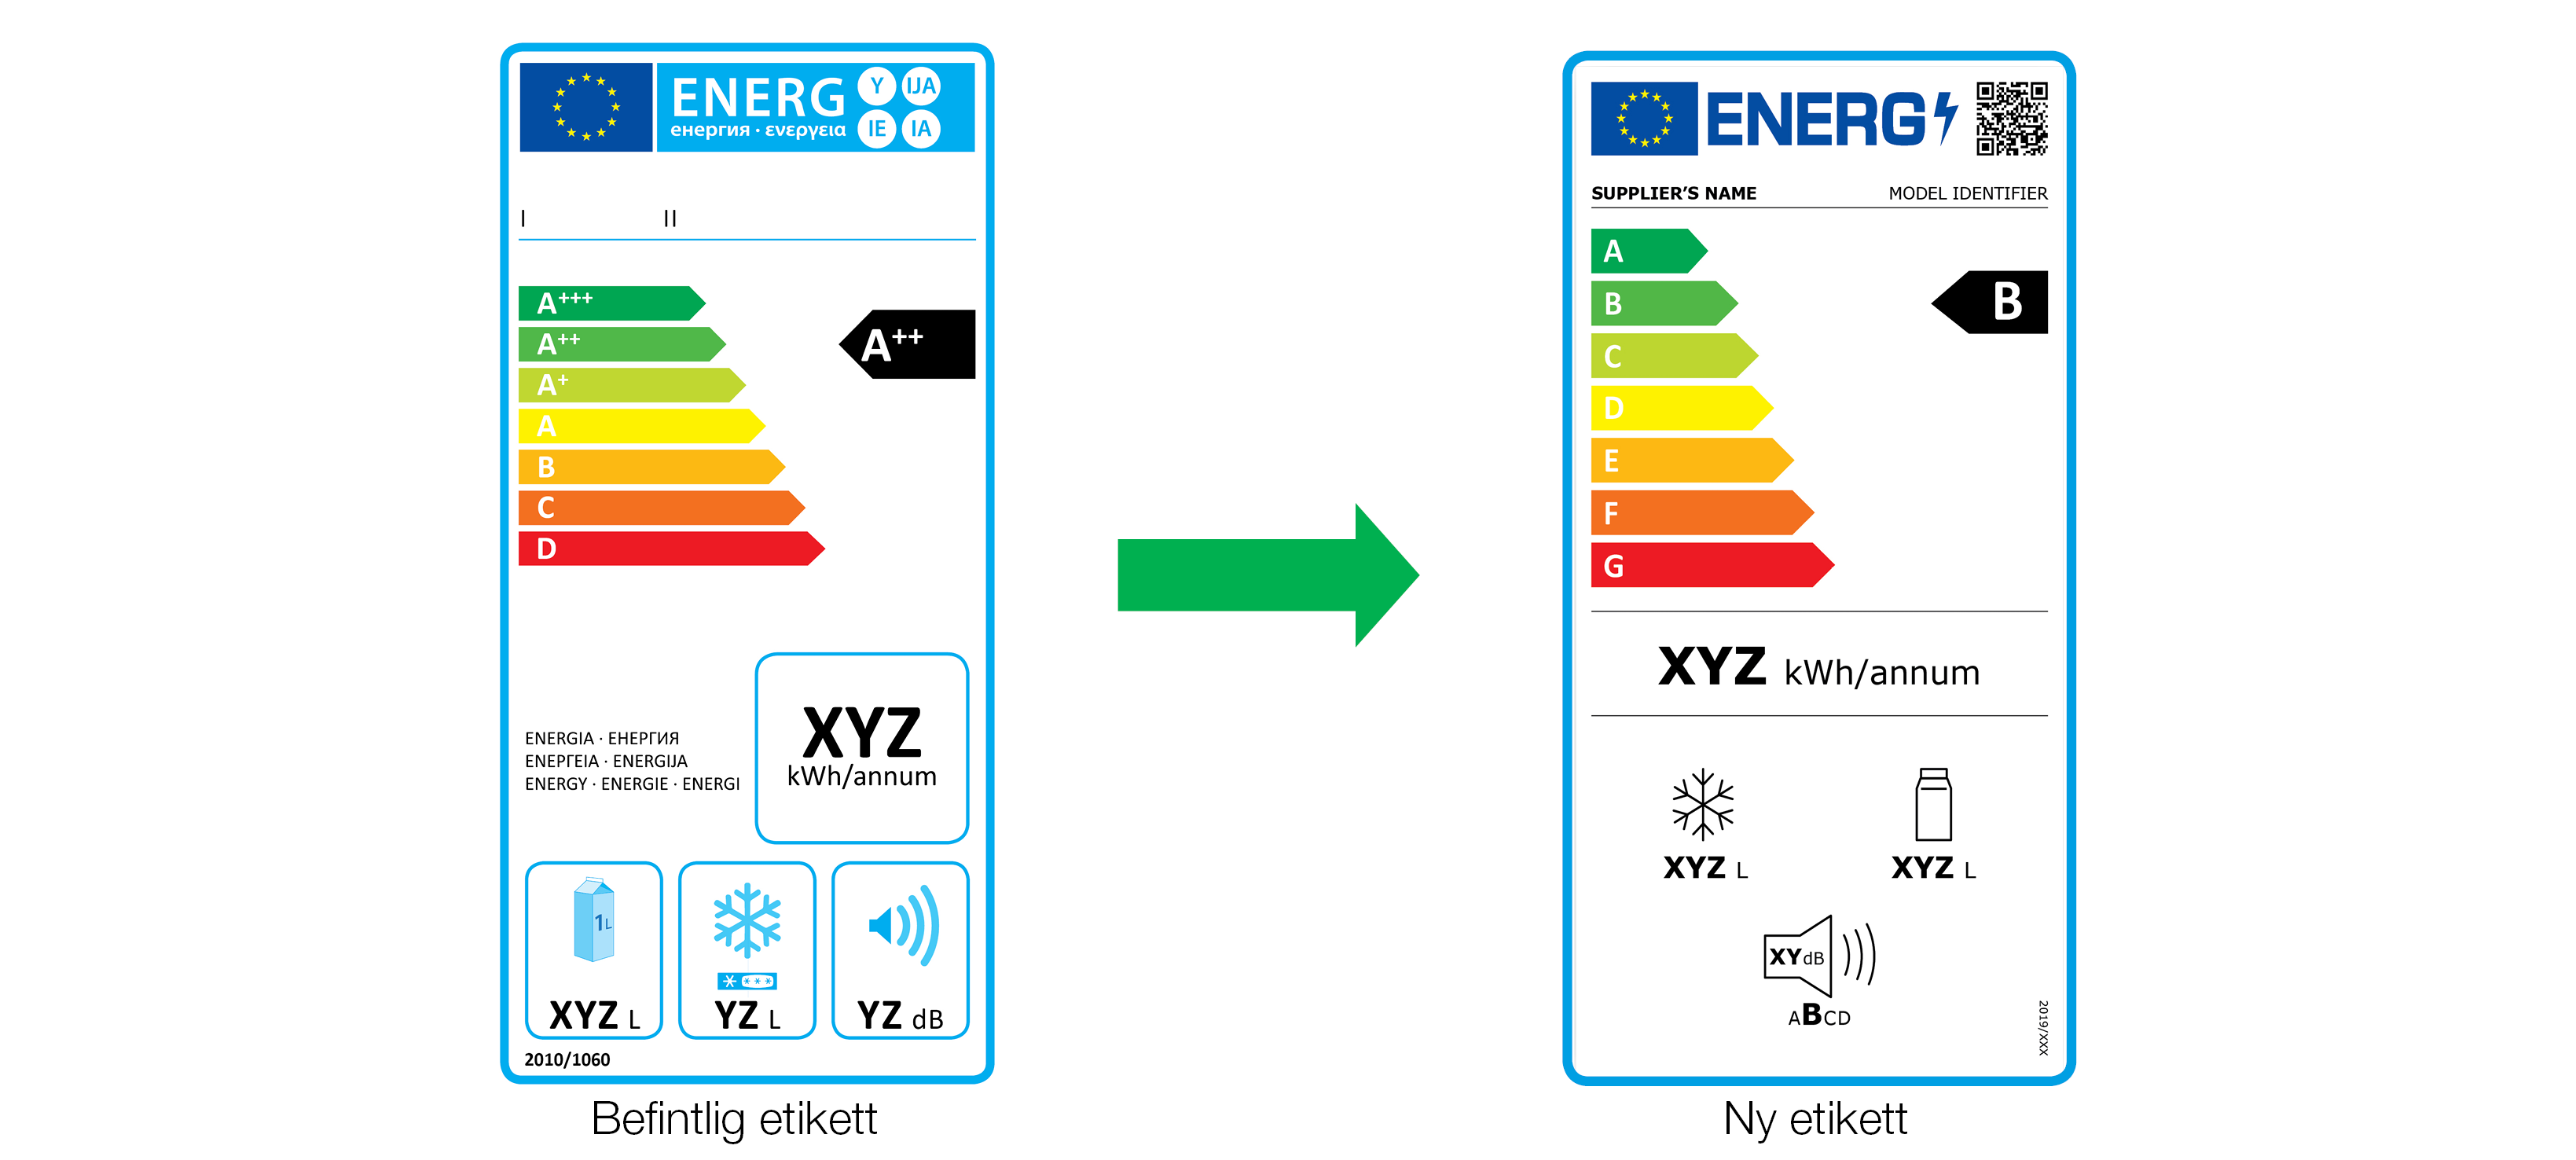 Bild visar befintlig och ny etikett för energimärkning av produkter